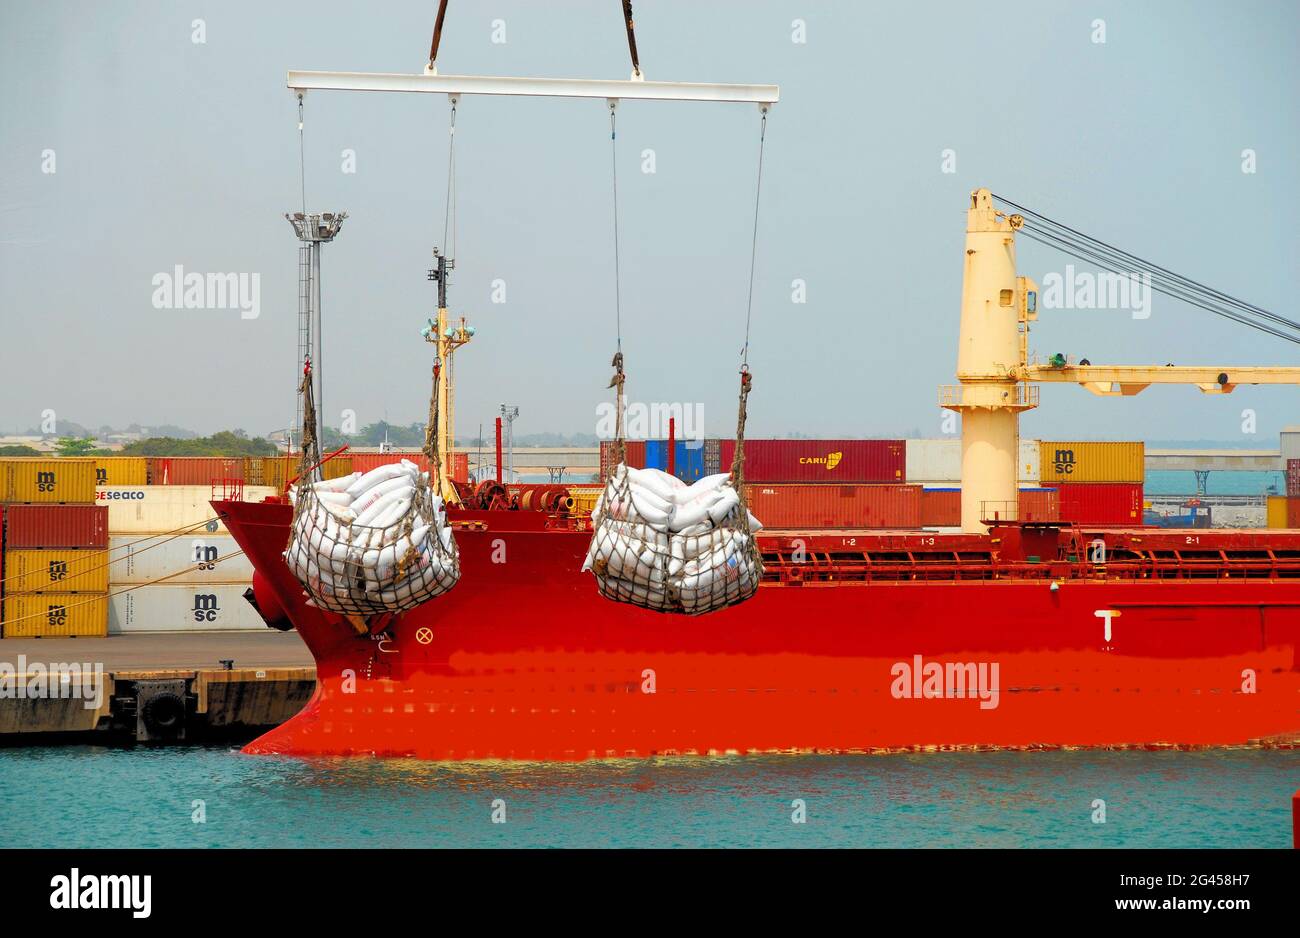 Nel porto di Lomé, Togo, una gru sta scaricando merci da una nave, mentre un'altra nave è attraccata accanto ad un molo dei container, in un giorno tropicale, cielo blu. Foto Stock